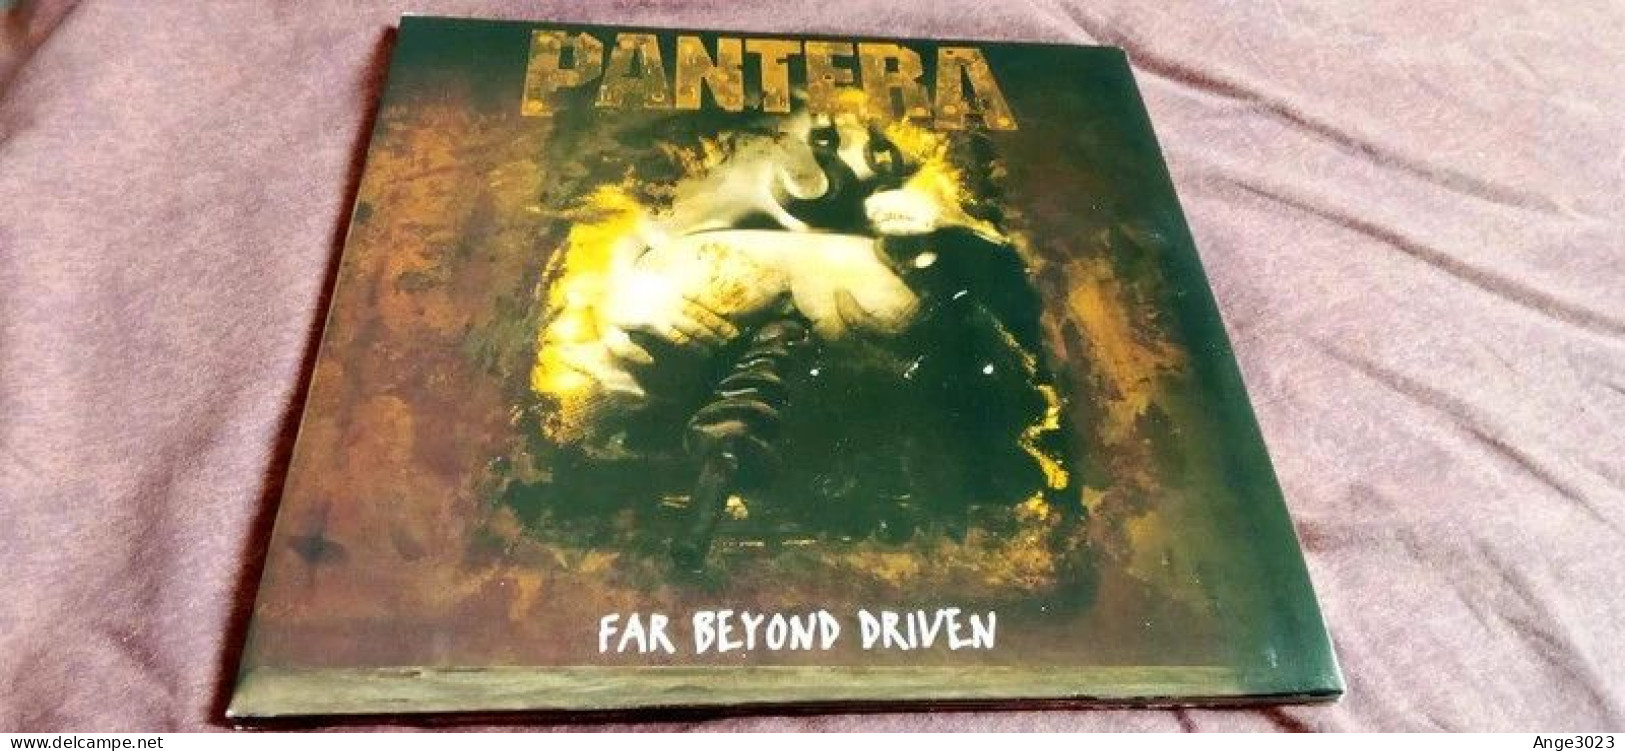 PANTERA "Far Beyond Driven" - Hard Rock & Metal